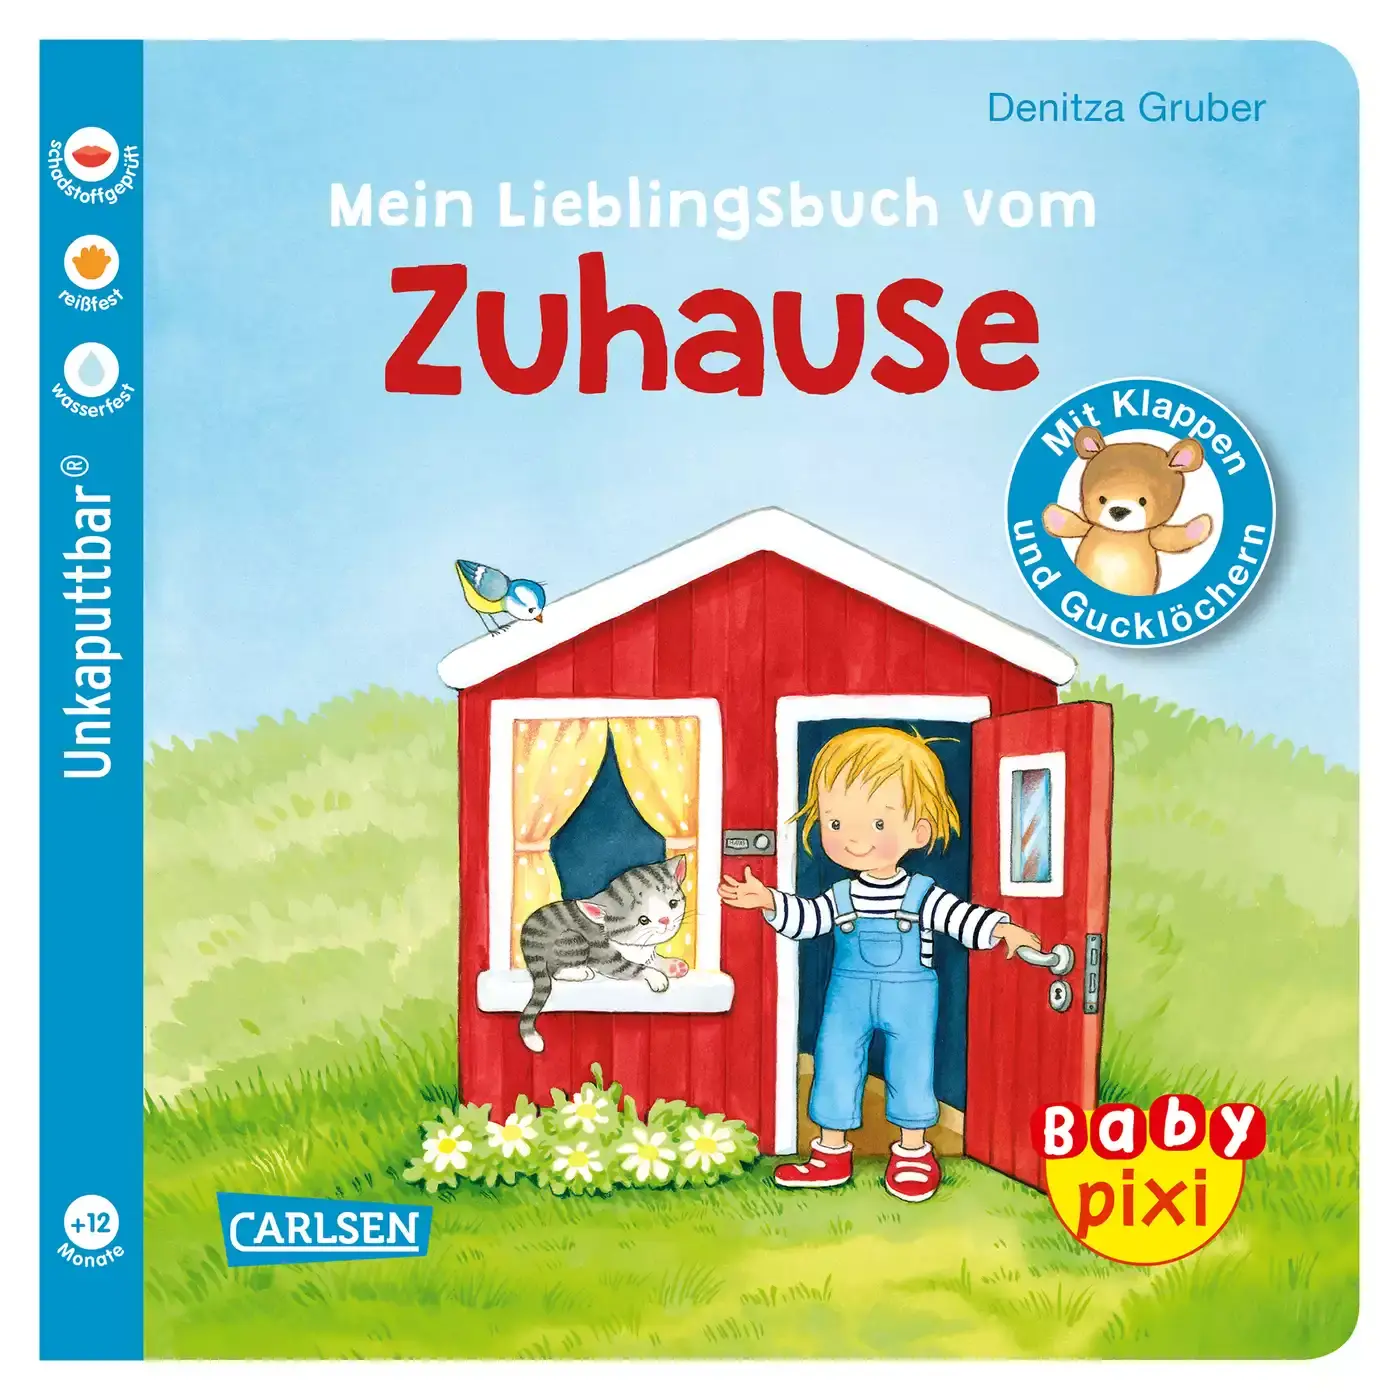 Baby Pixi - Mein Lieblingsbuch vom Zuhause CARLSEN 2000579081019 1